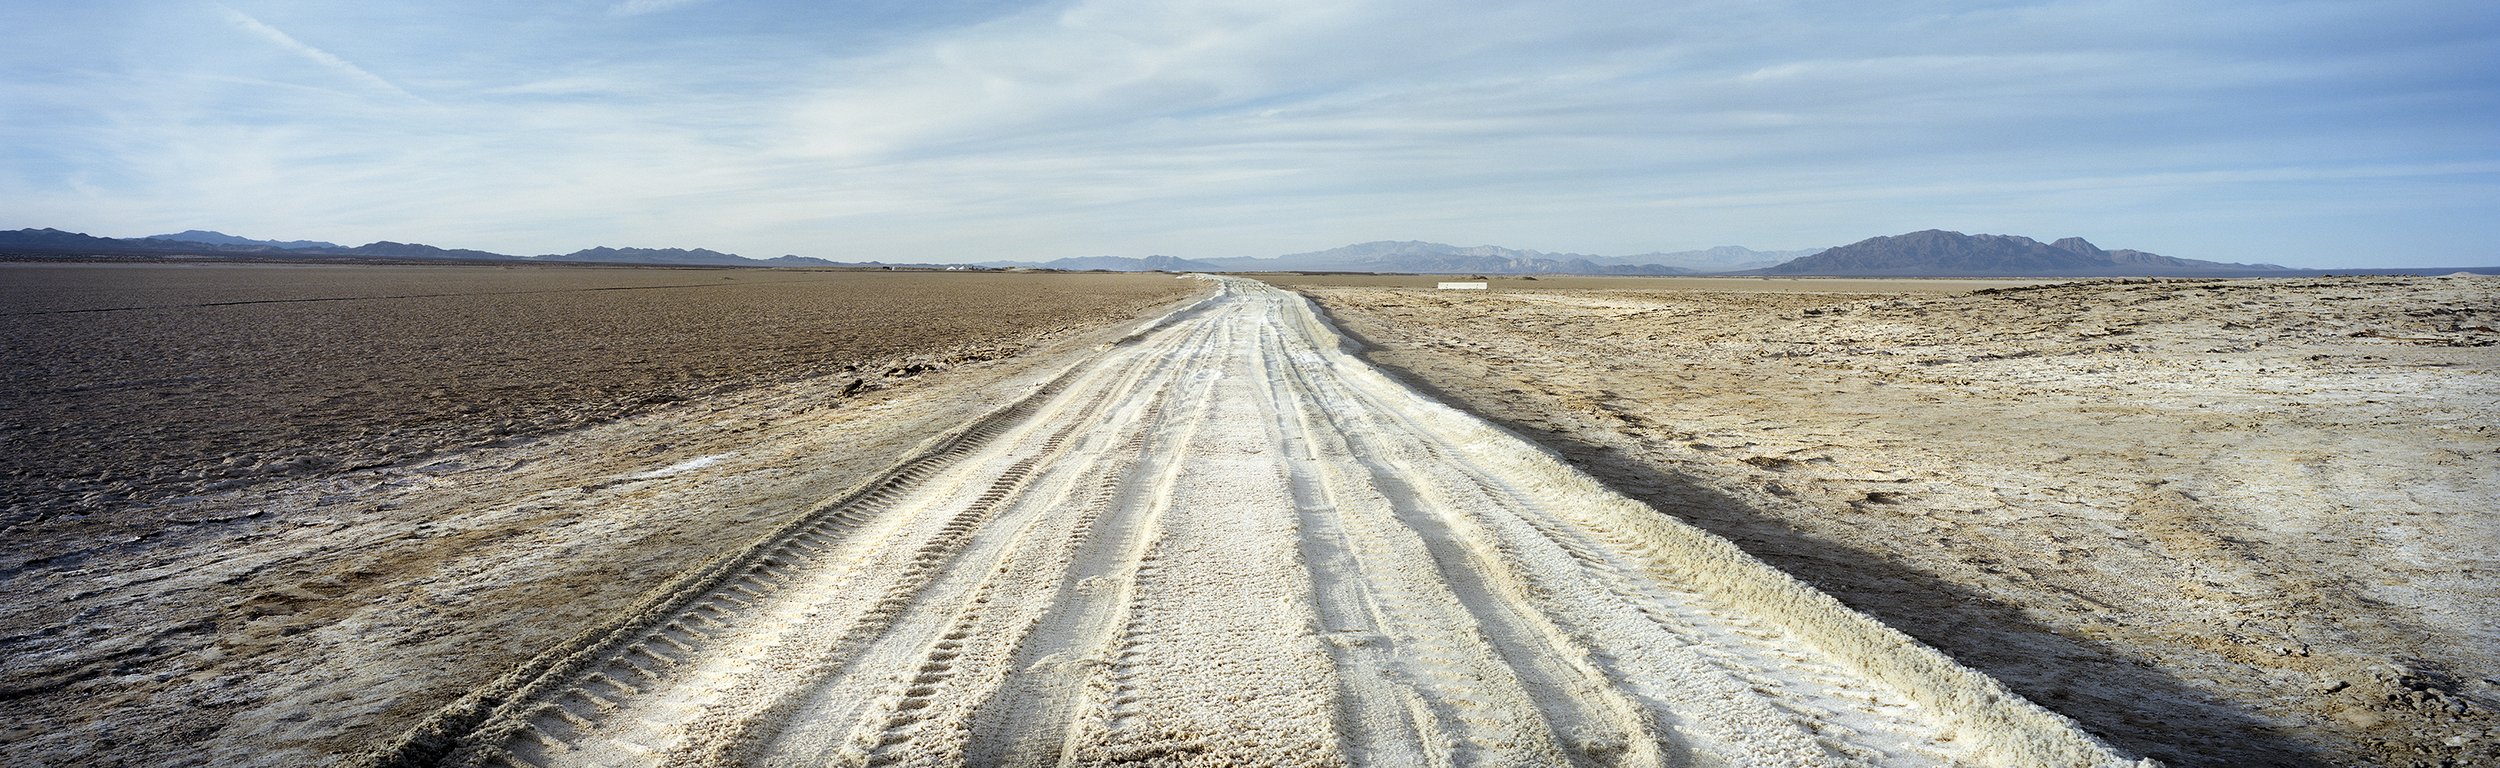  Salt Road. Cadiz Dry Lake. January 7, 2018 